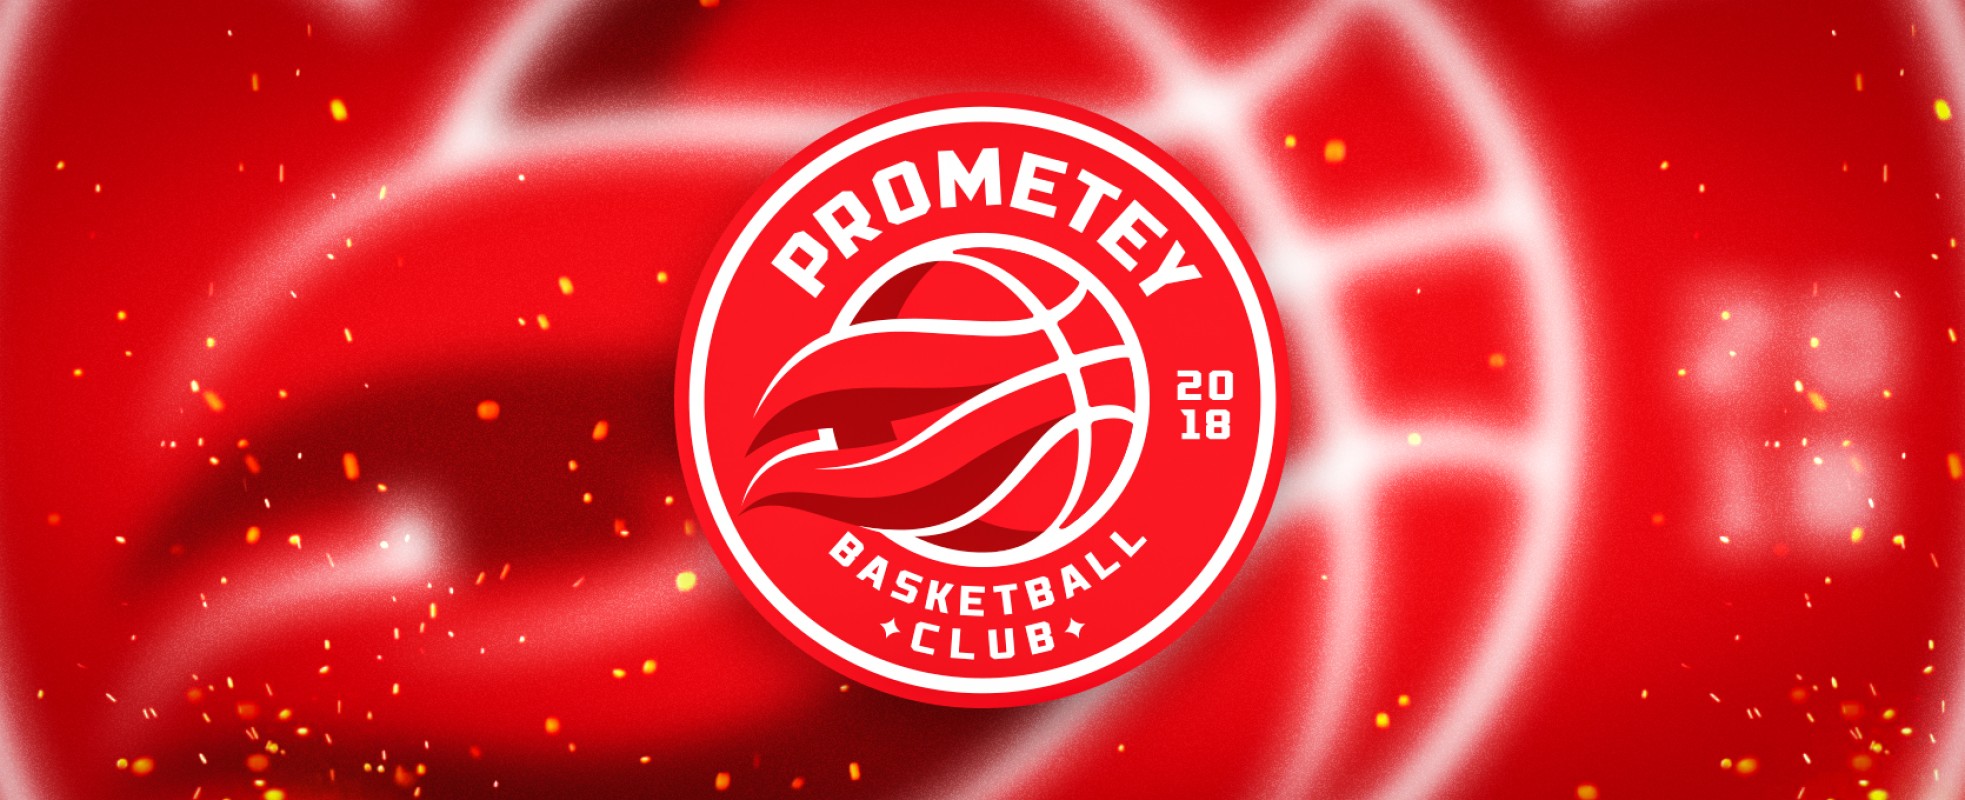 БК «Прометей» представляє новий офіційний логотип!